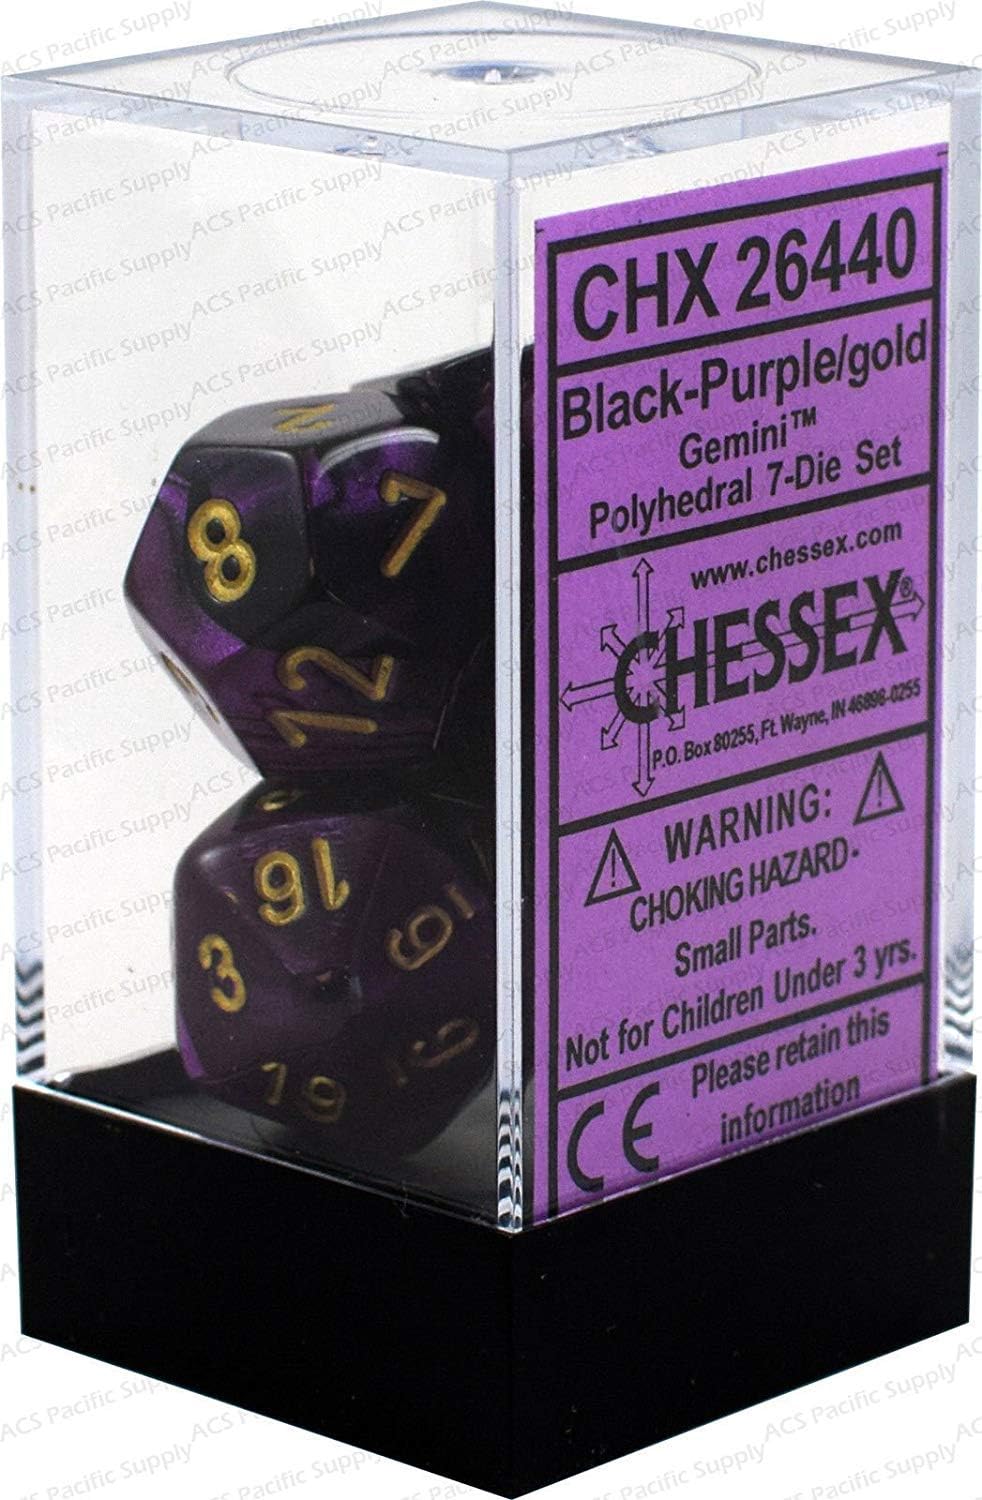 Chessex 26440CHX Die Set, Black/Purple/Gold, One Size